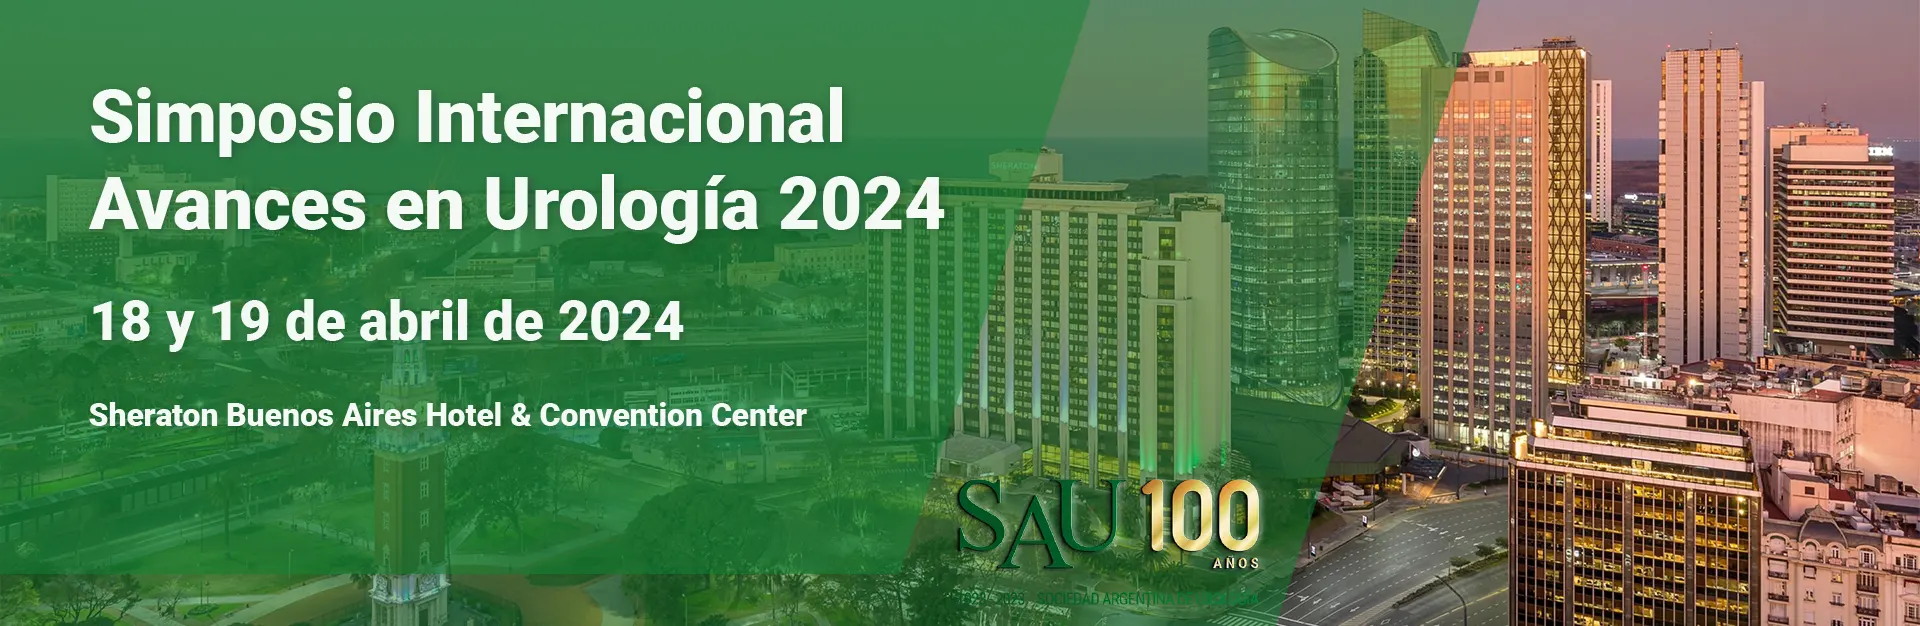 Simposio Internacional "Avances en Urología 2024" 18 y 19 de abril de 2024. Sheraton Buenos Aires Hotel & Convention Center.